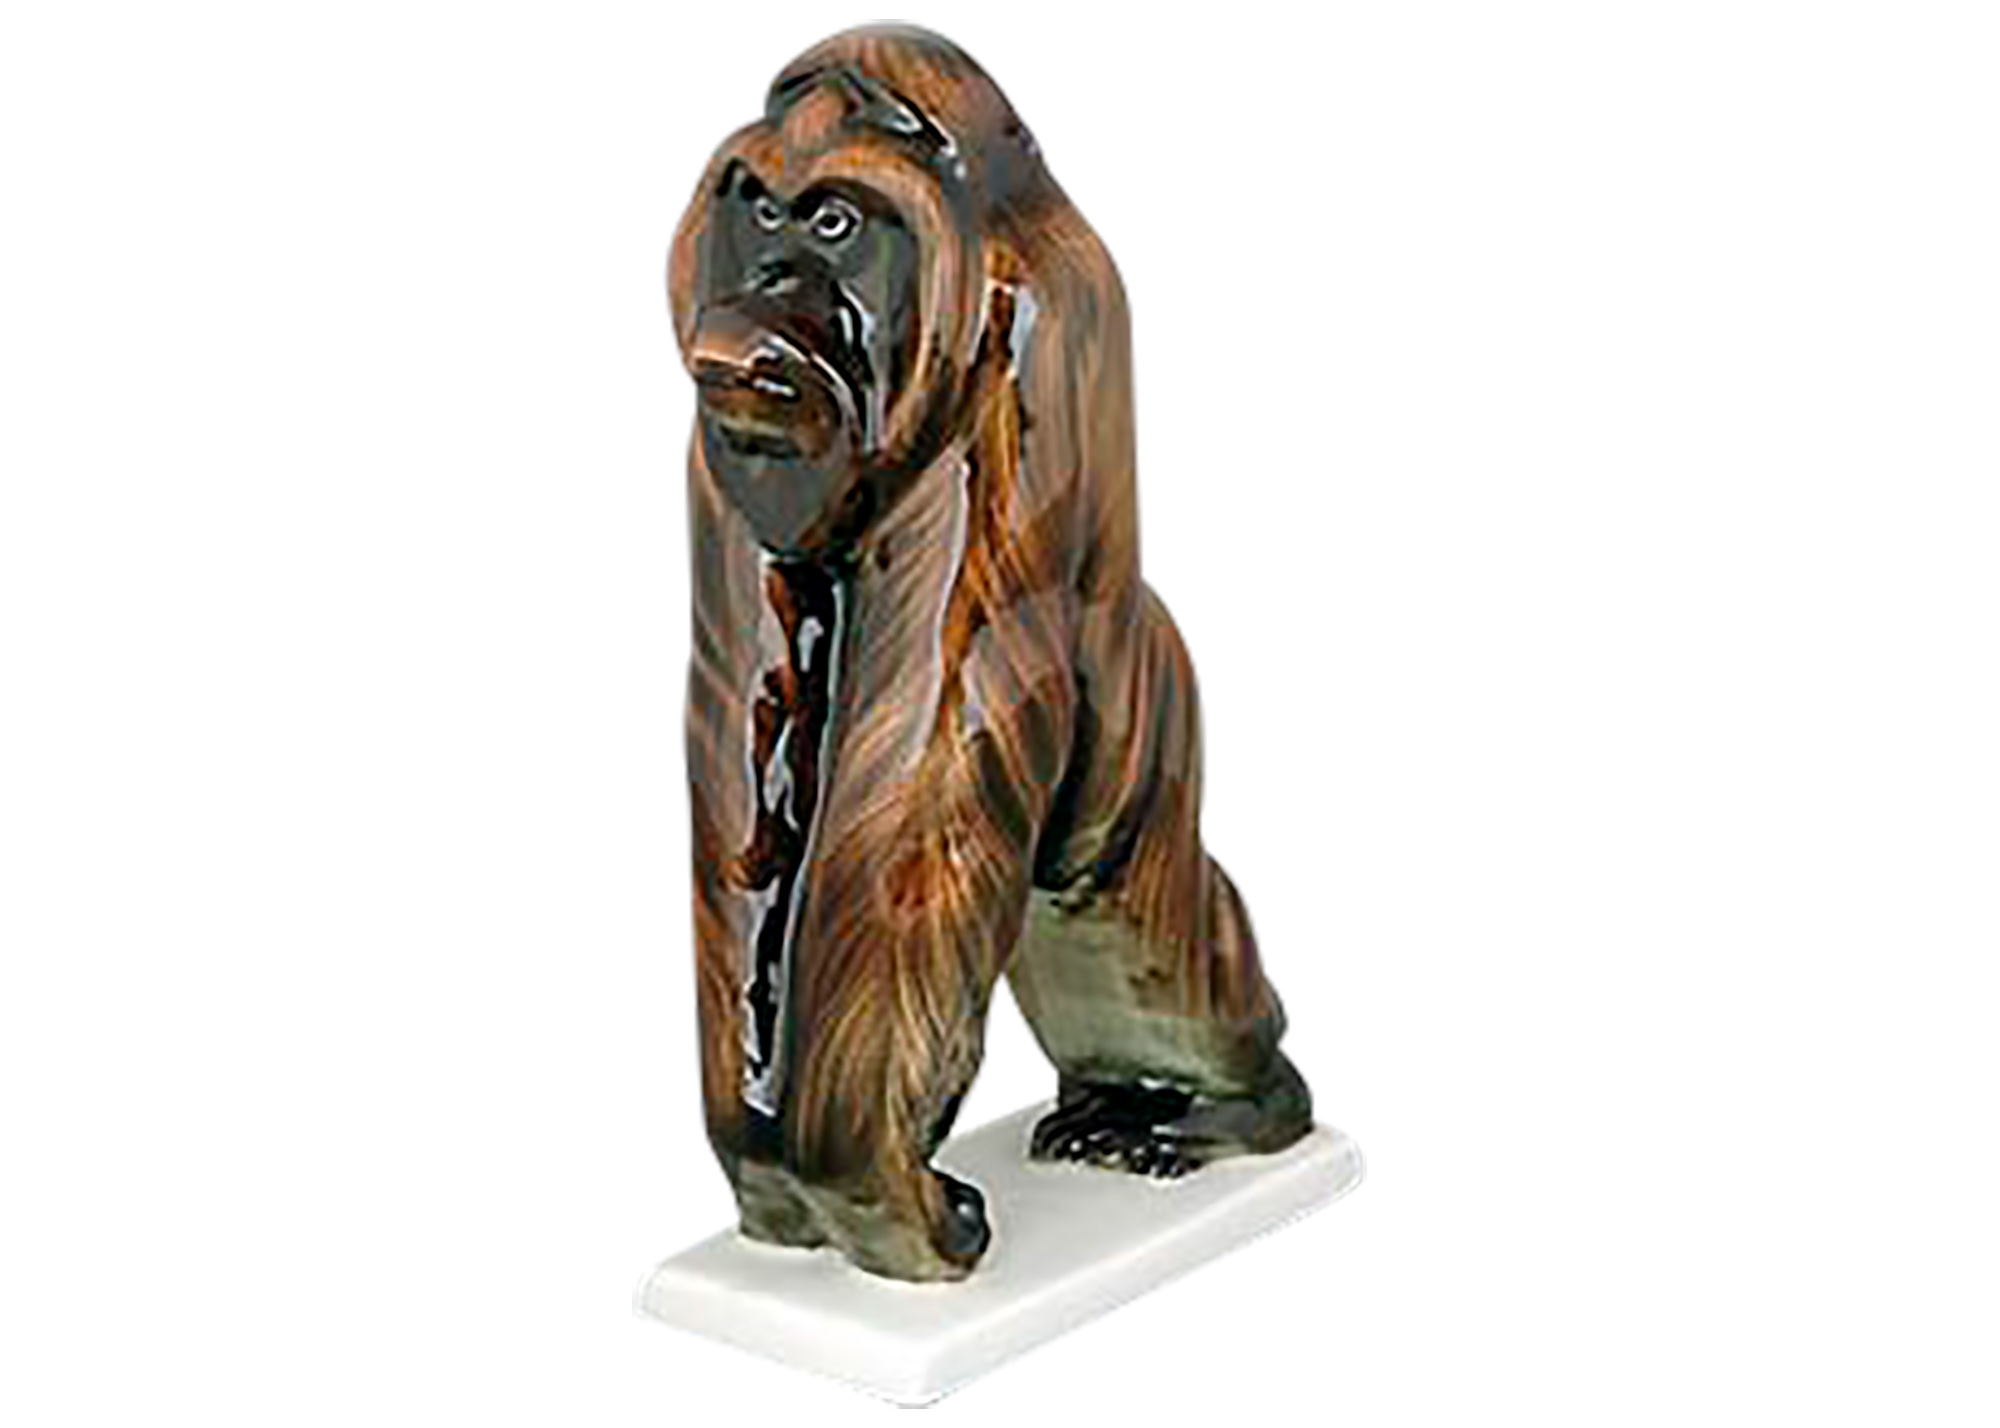 Buy Фарфоровая статуэтка "Орангутан" at GoldenCockerel.com